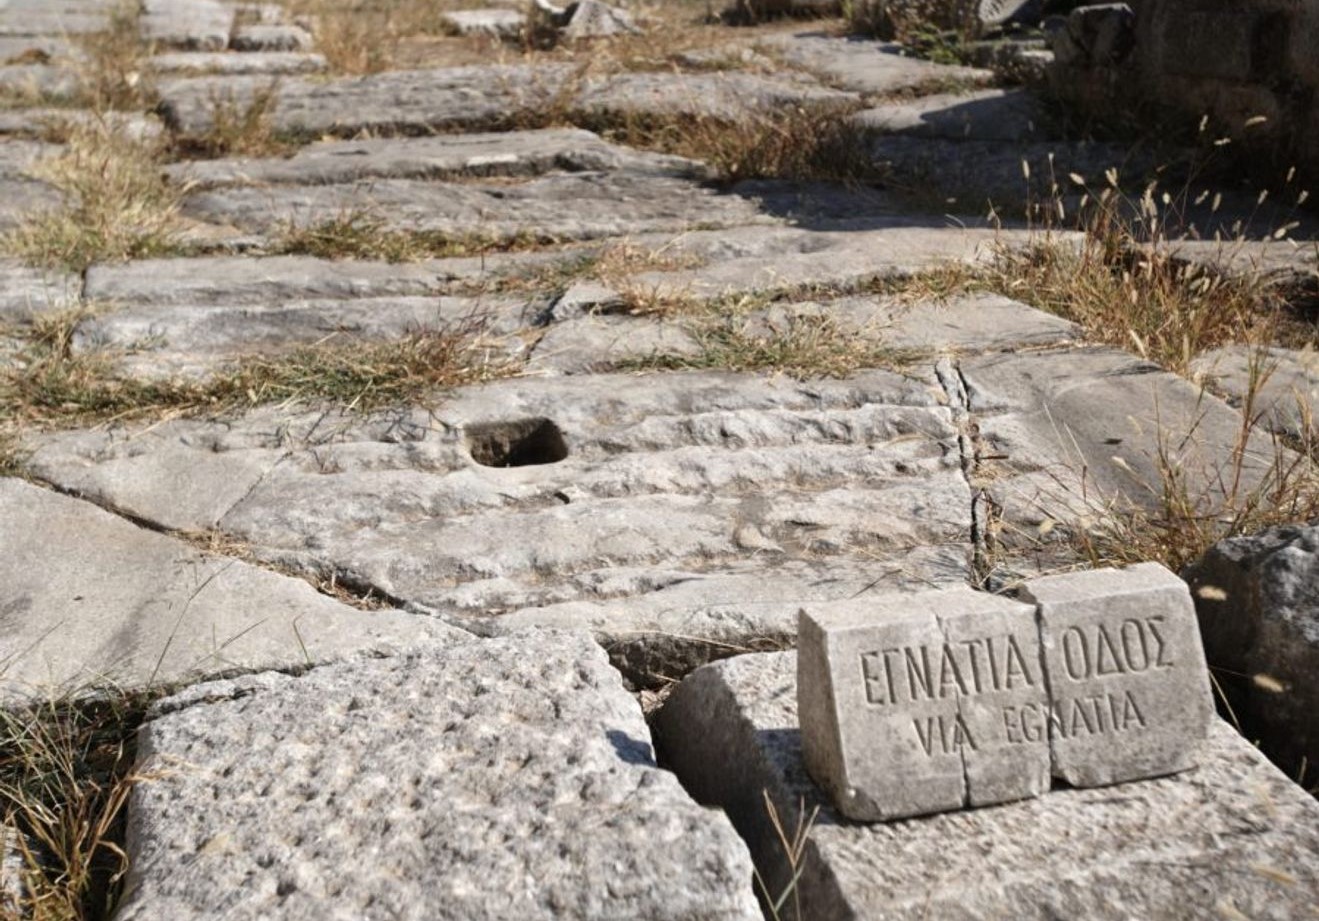 Ancient Egnatia Road